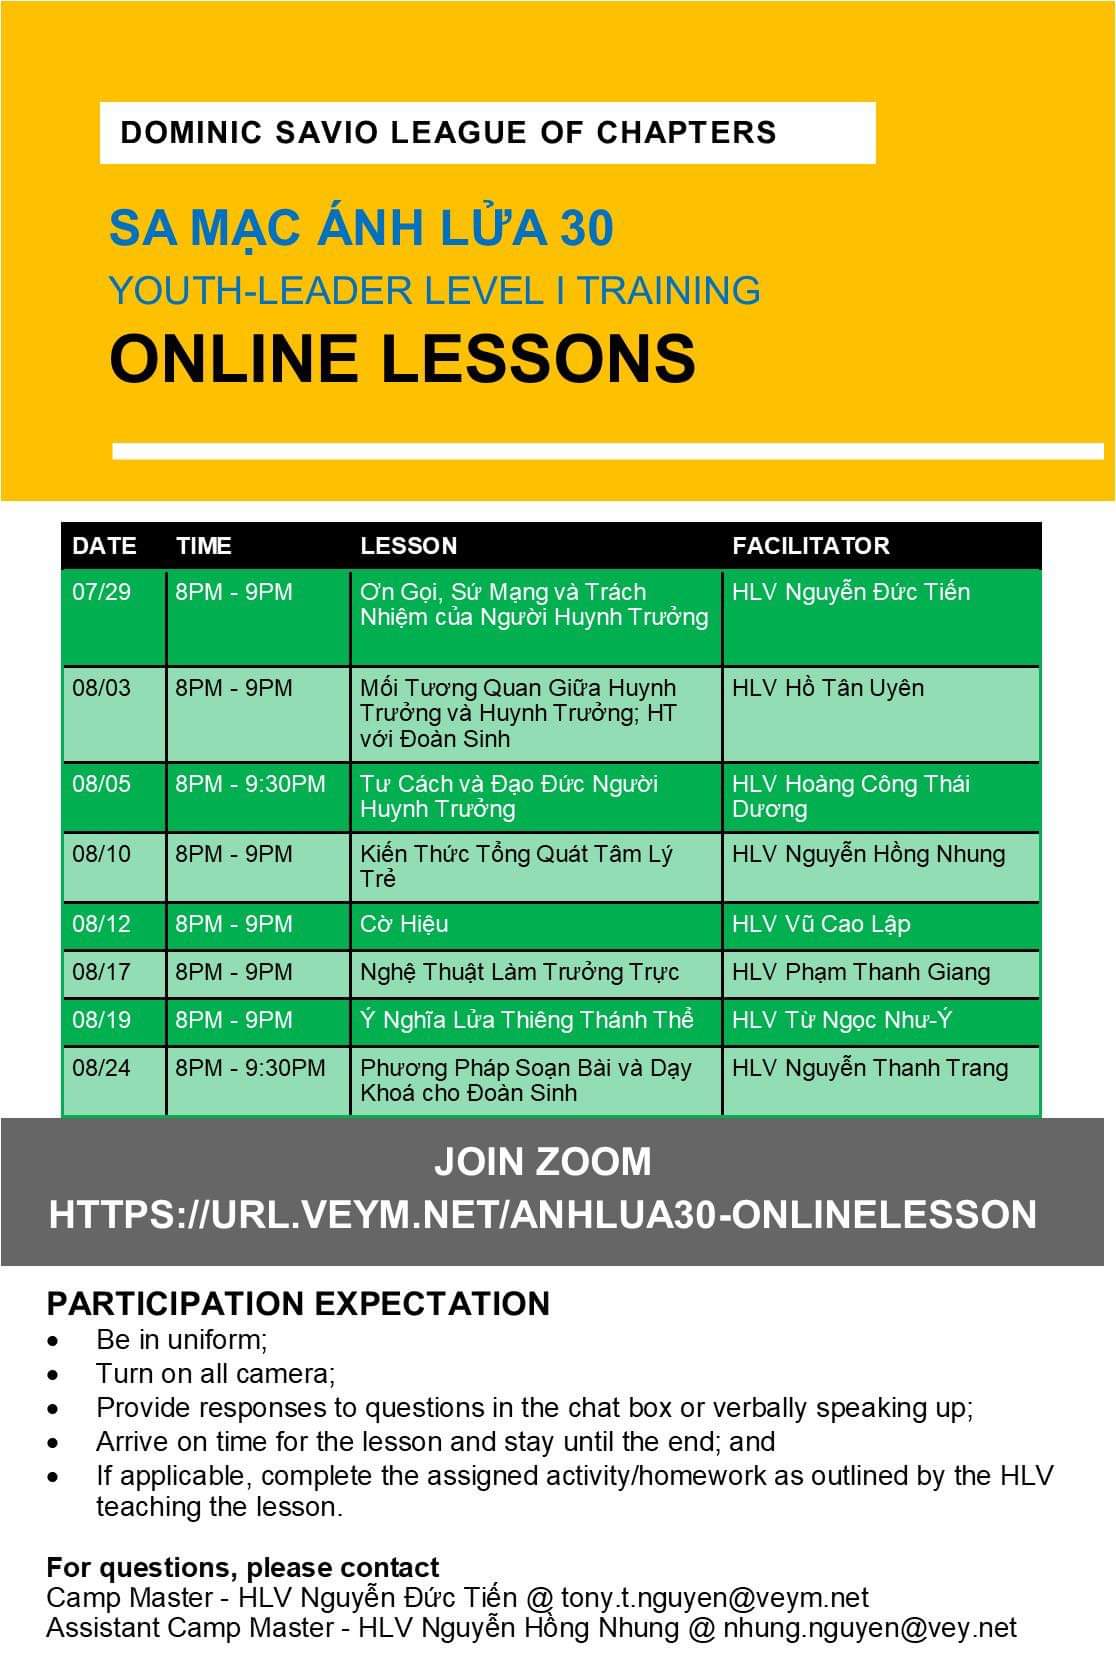 AL30 Online Lesson Schedule